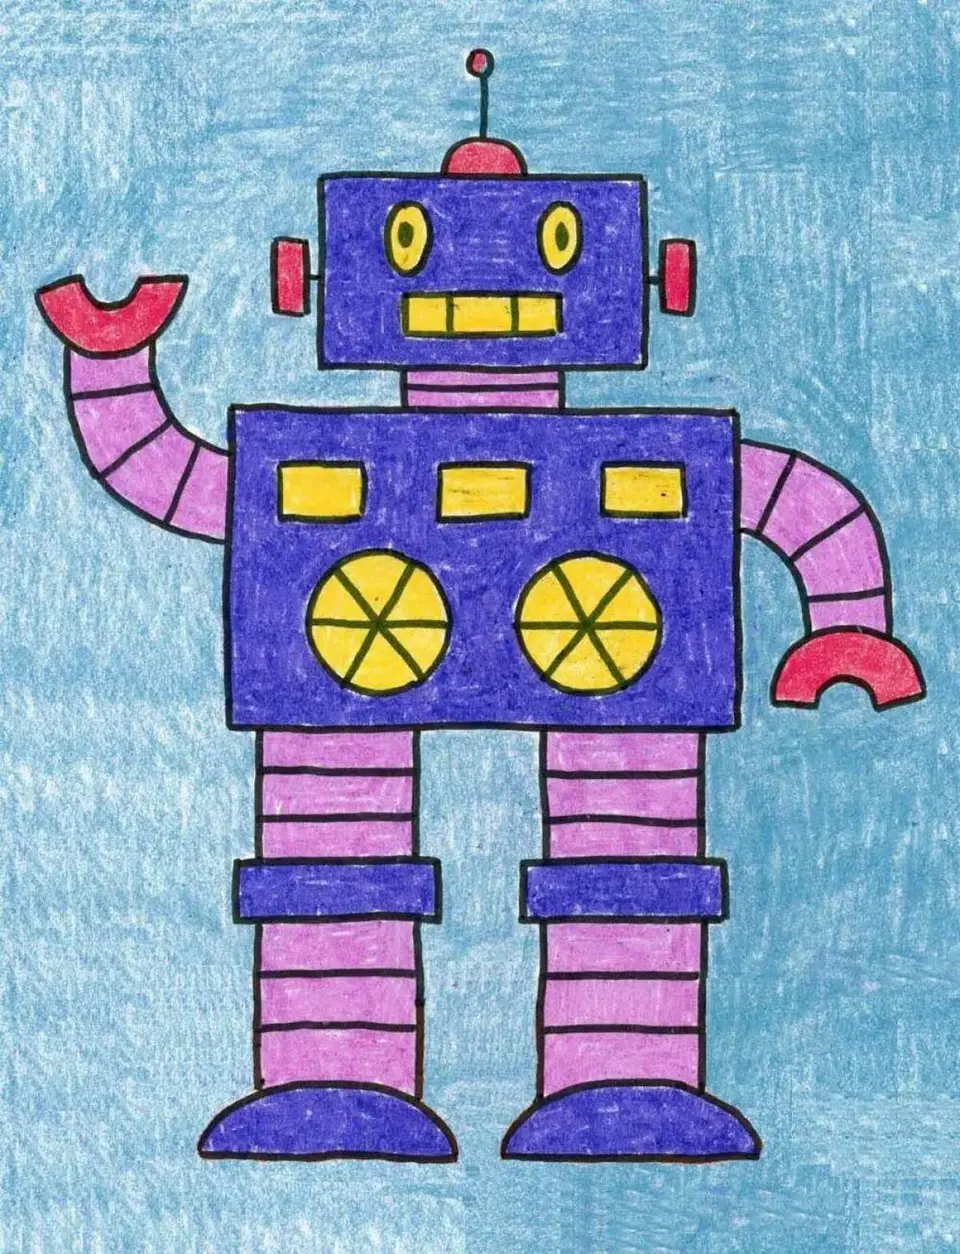 Роботы для рисования детям